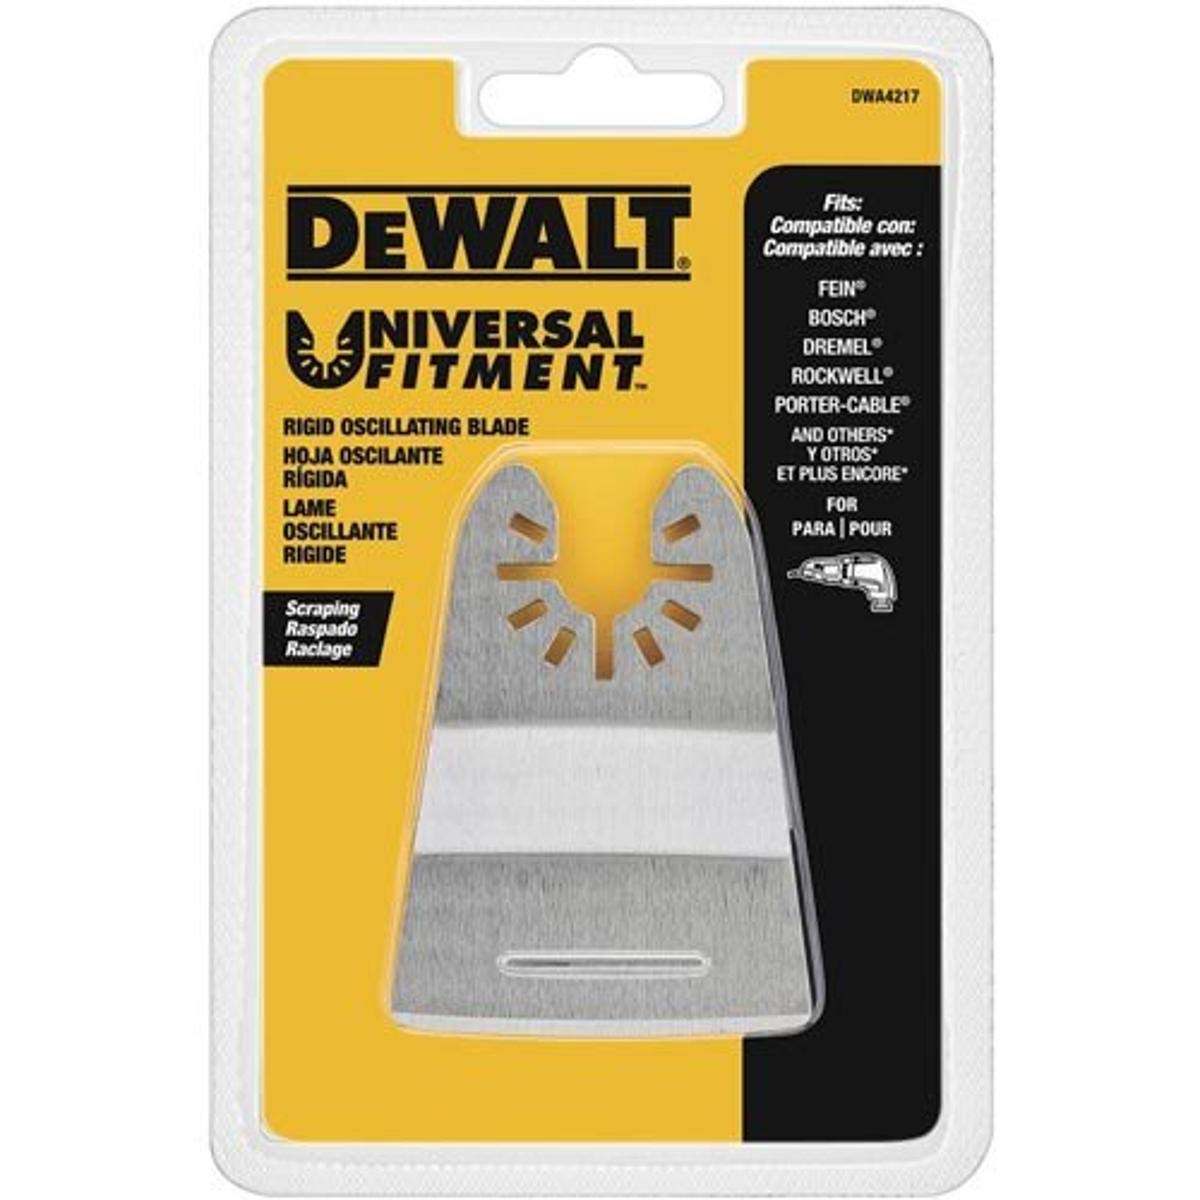 DEWALT Oscillating Rigid Scraper Tool Blade (DWA4217) $5.55 + Free Shipping w/ Prime or on $35+